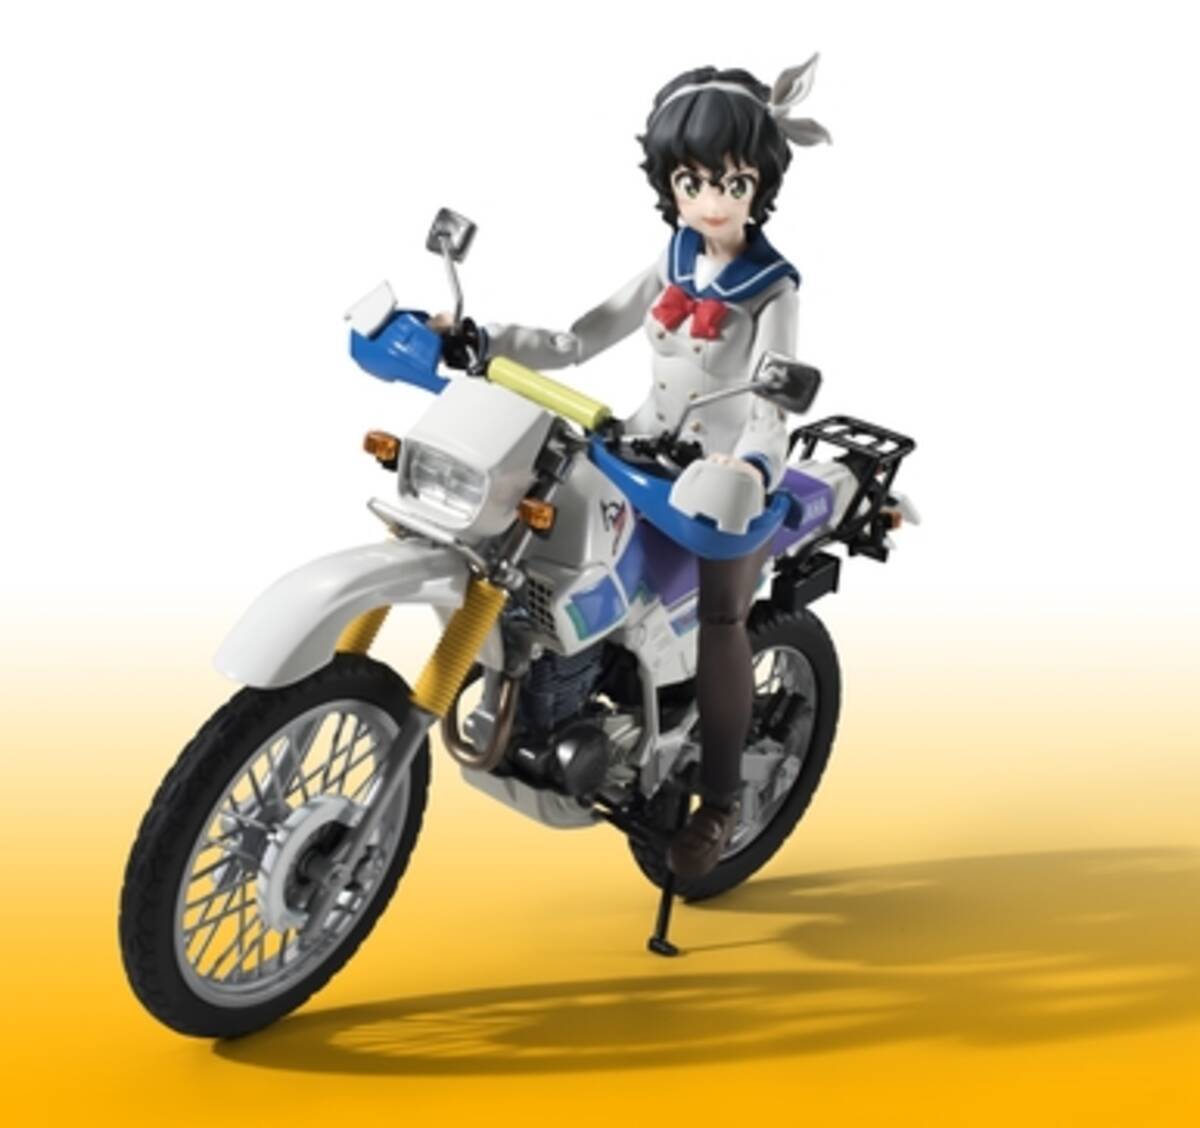 日常系バイクアニメ ばくおん から天野恩紗と愛車serow225wのフィギュアが登場 16年5月21日 エキサイトニュース